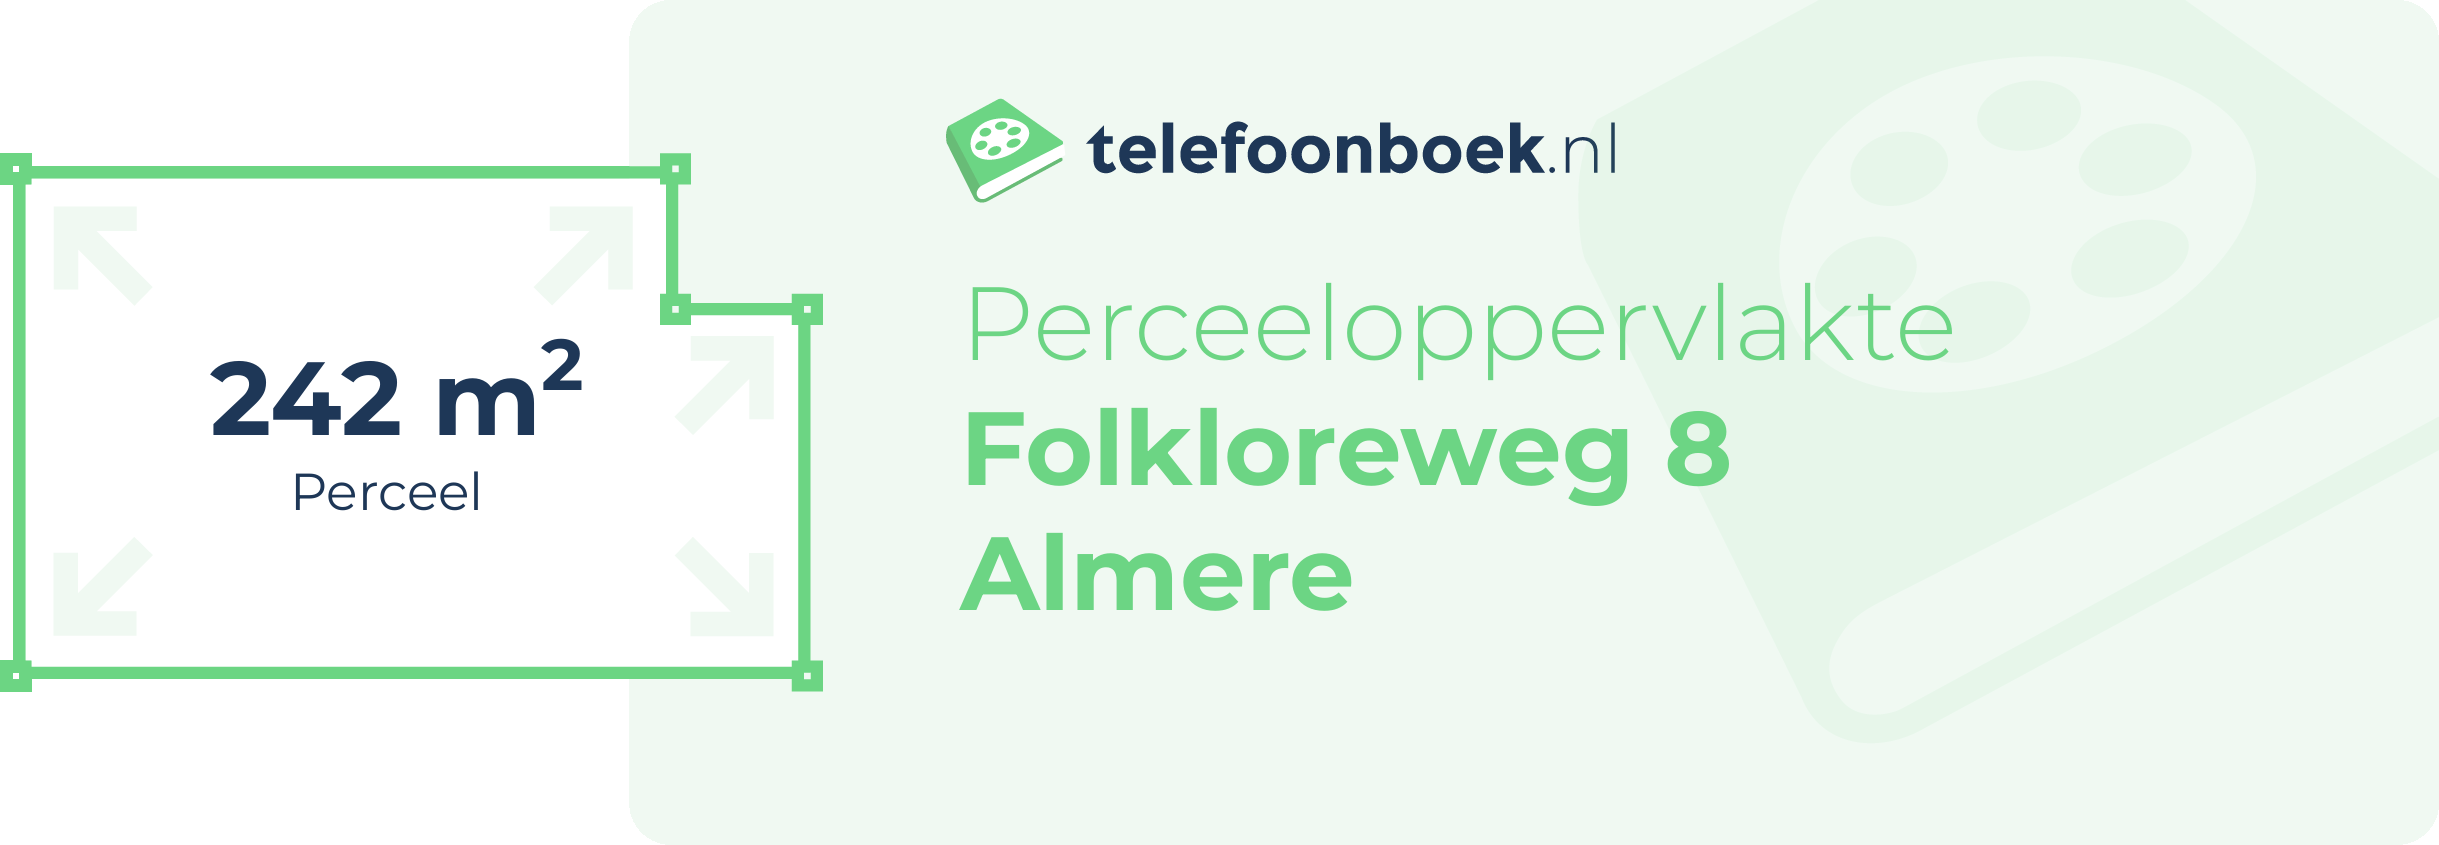 Perceeloppervlakte Folkloreweg 8 Almere